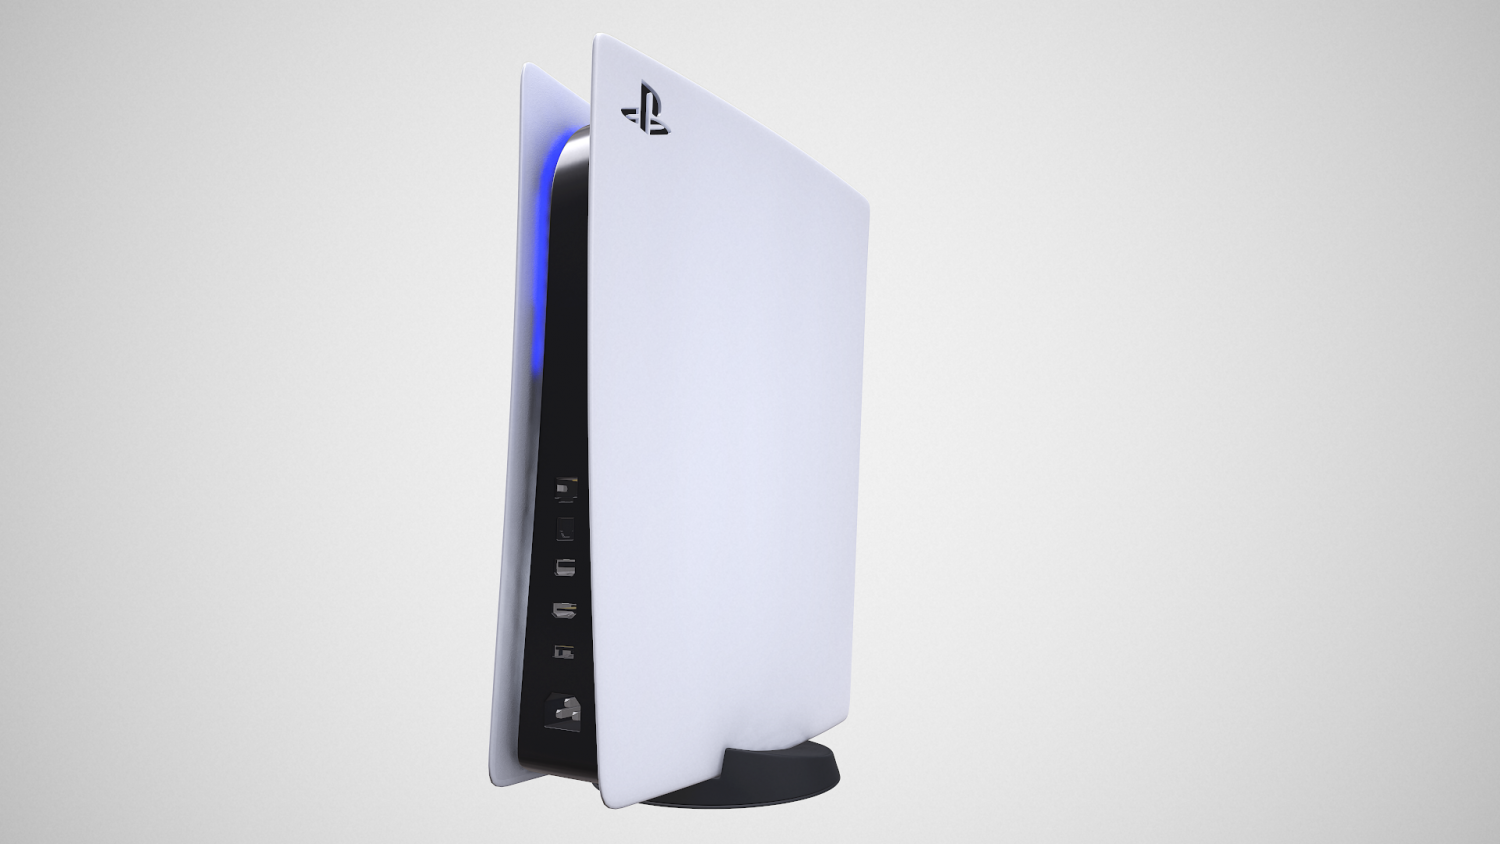 Sony HD PS5 Cámara Modelo 3D - Descargar Electrónica on